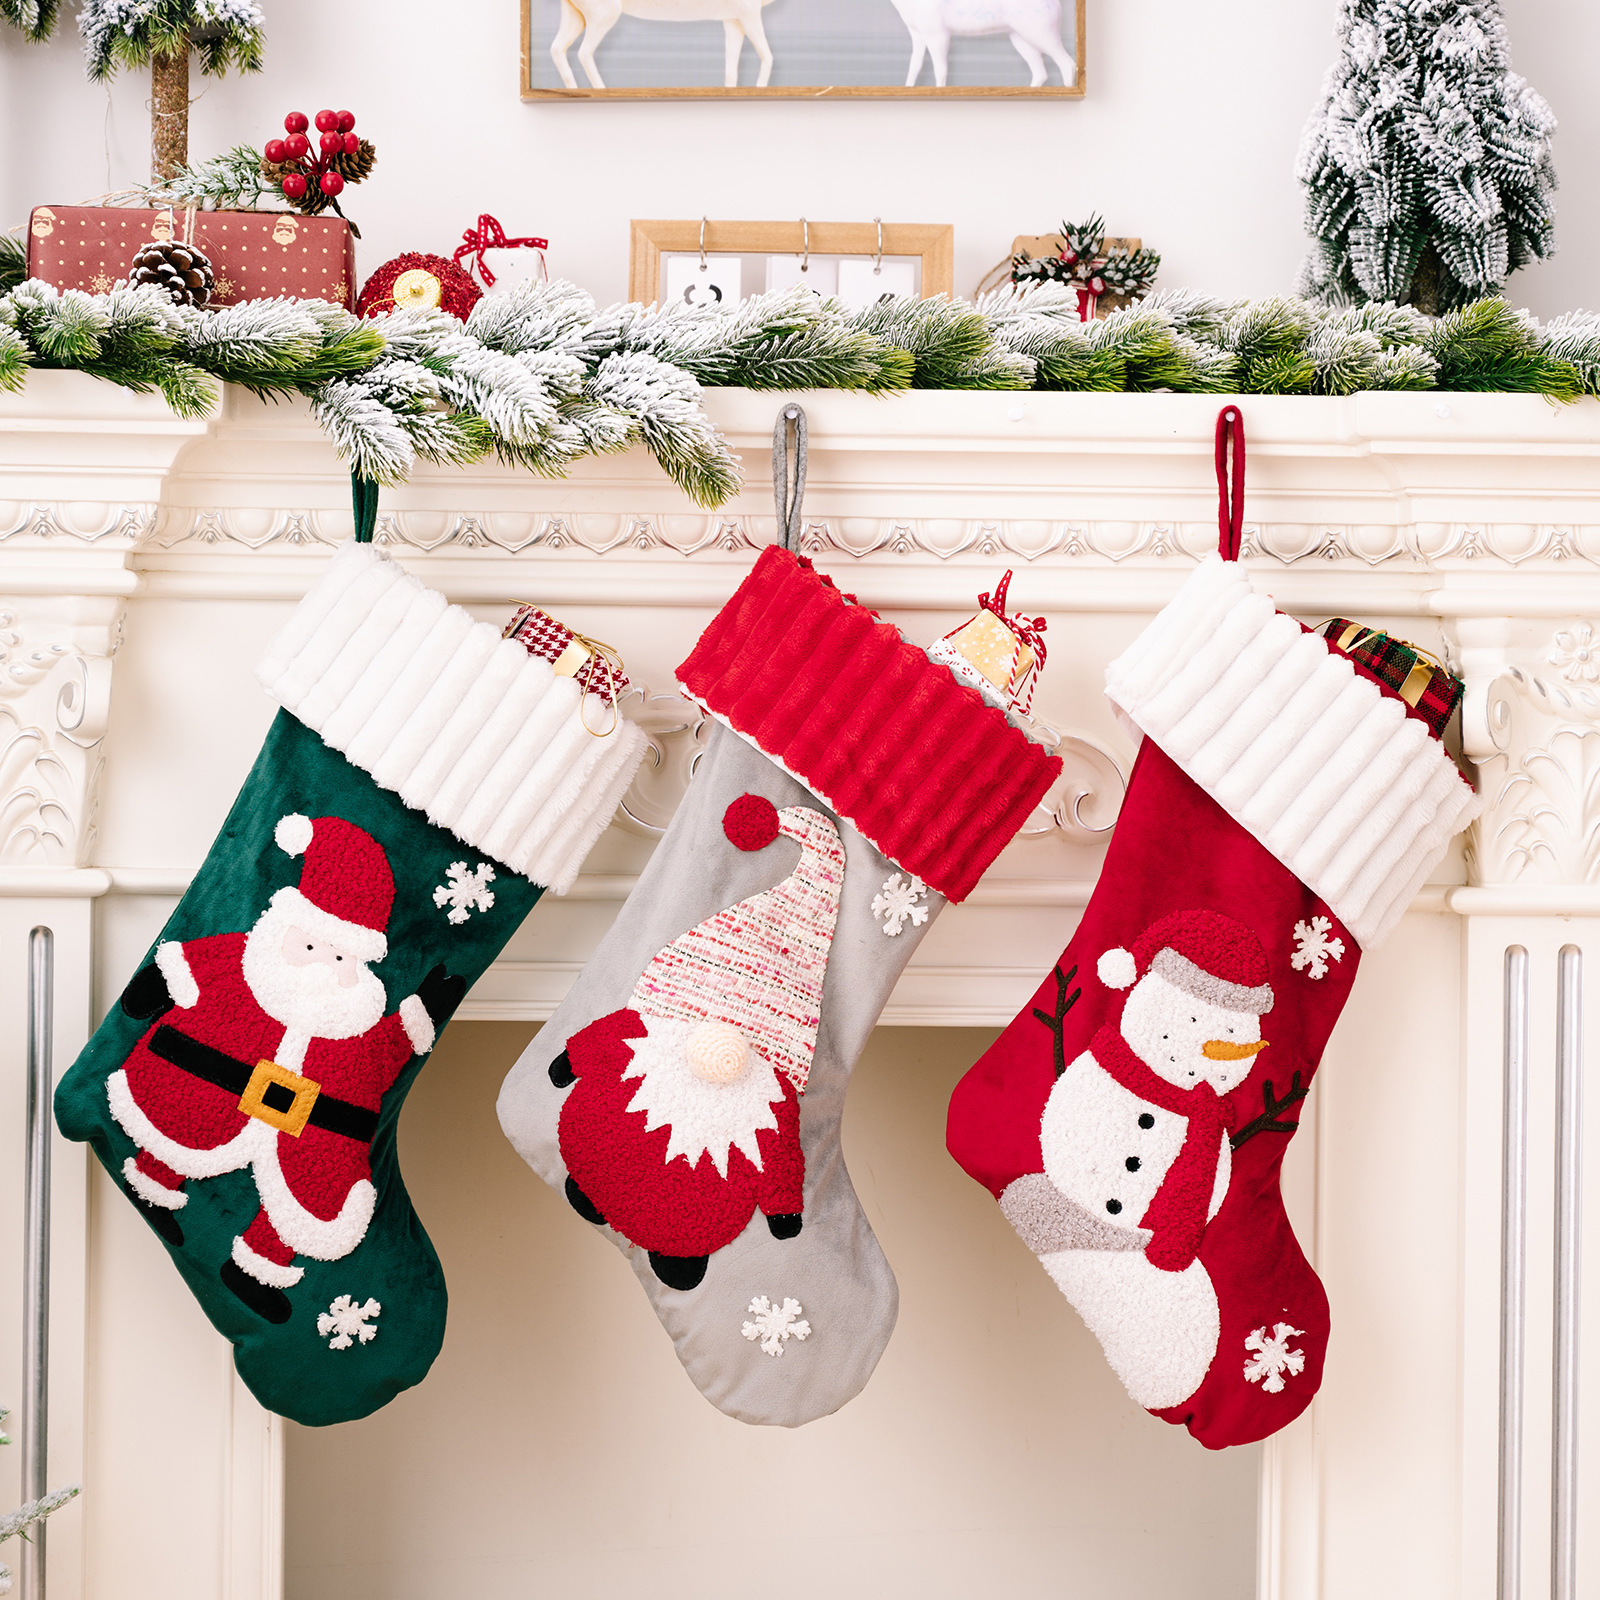 金絲絨卡通聖誕襪 聖誕老人雪人 糖果袋 聖誕禮物 聖誕裝飾 平安夜